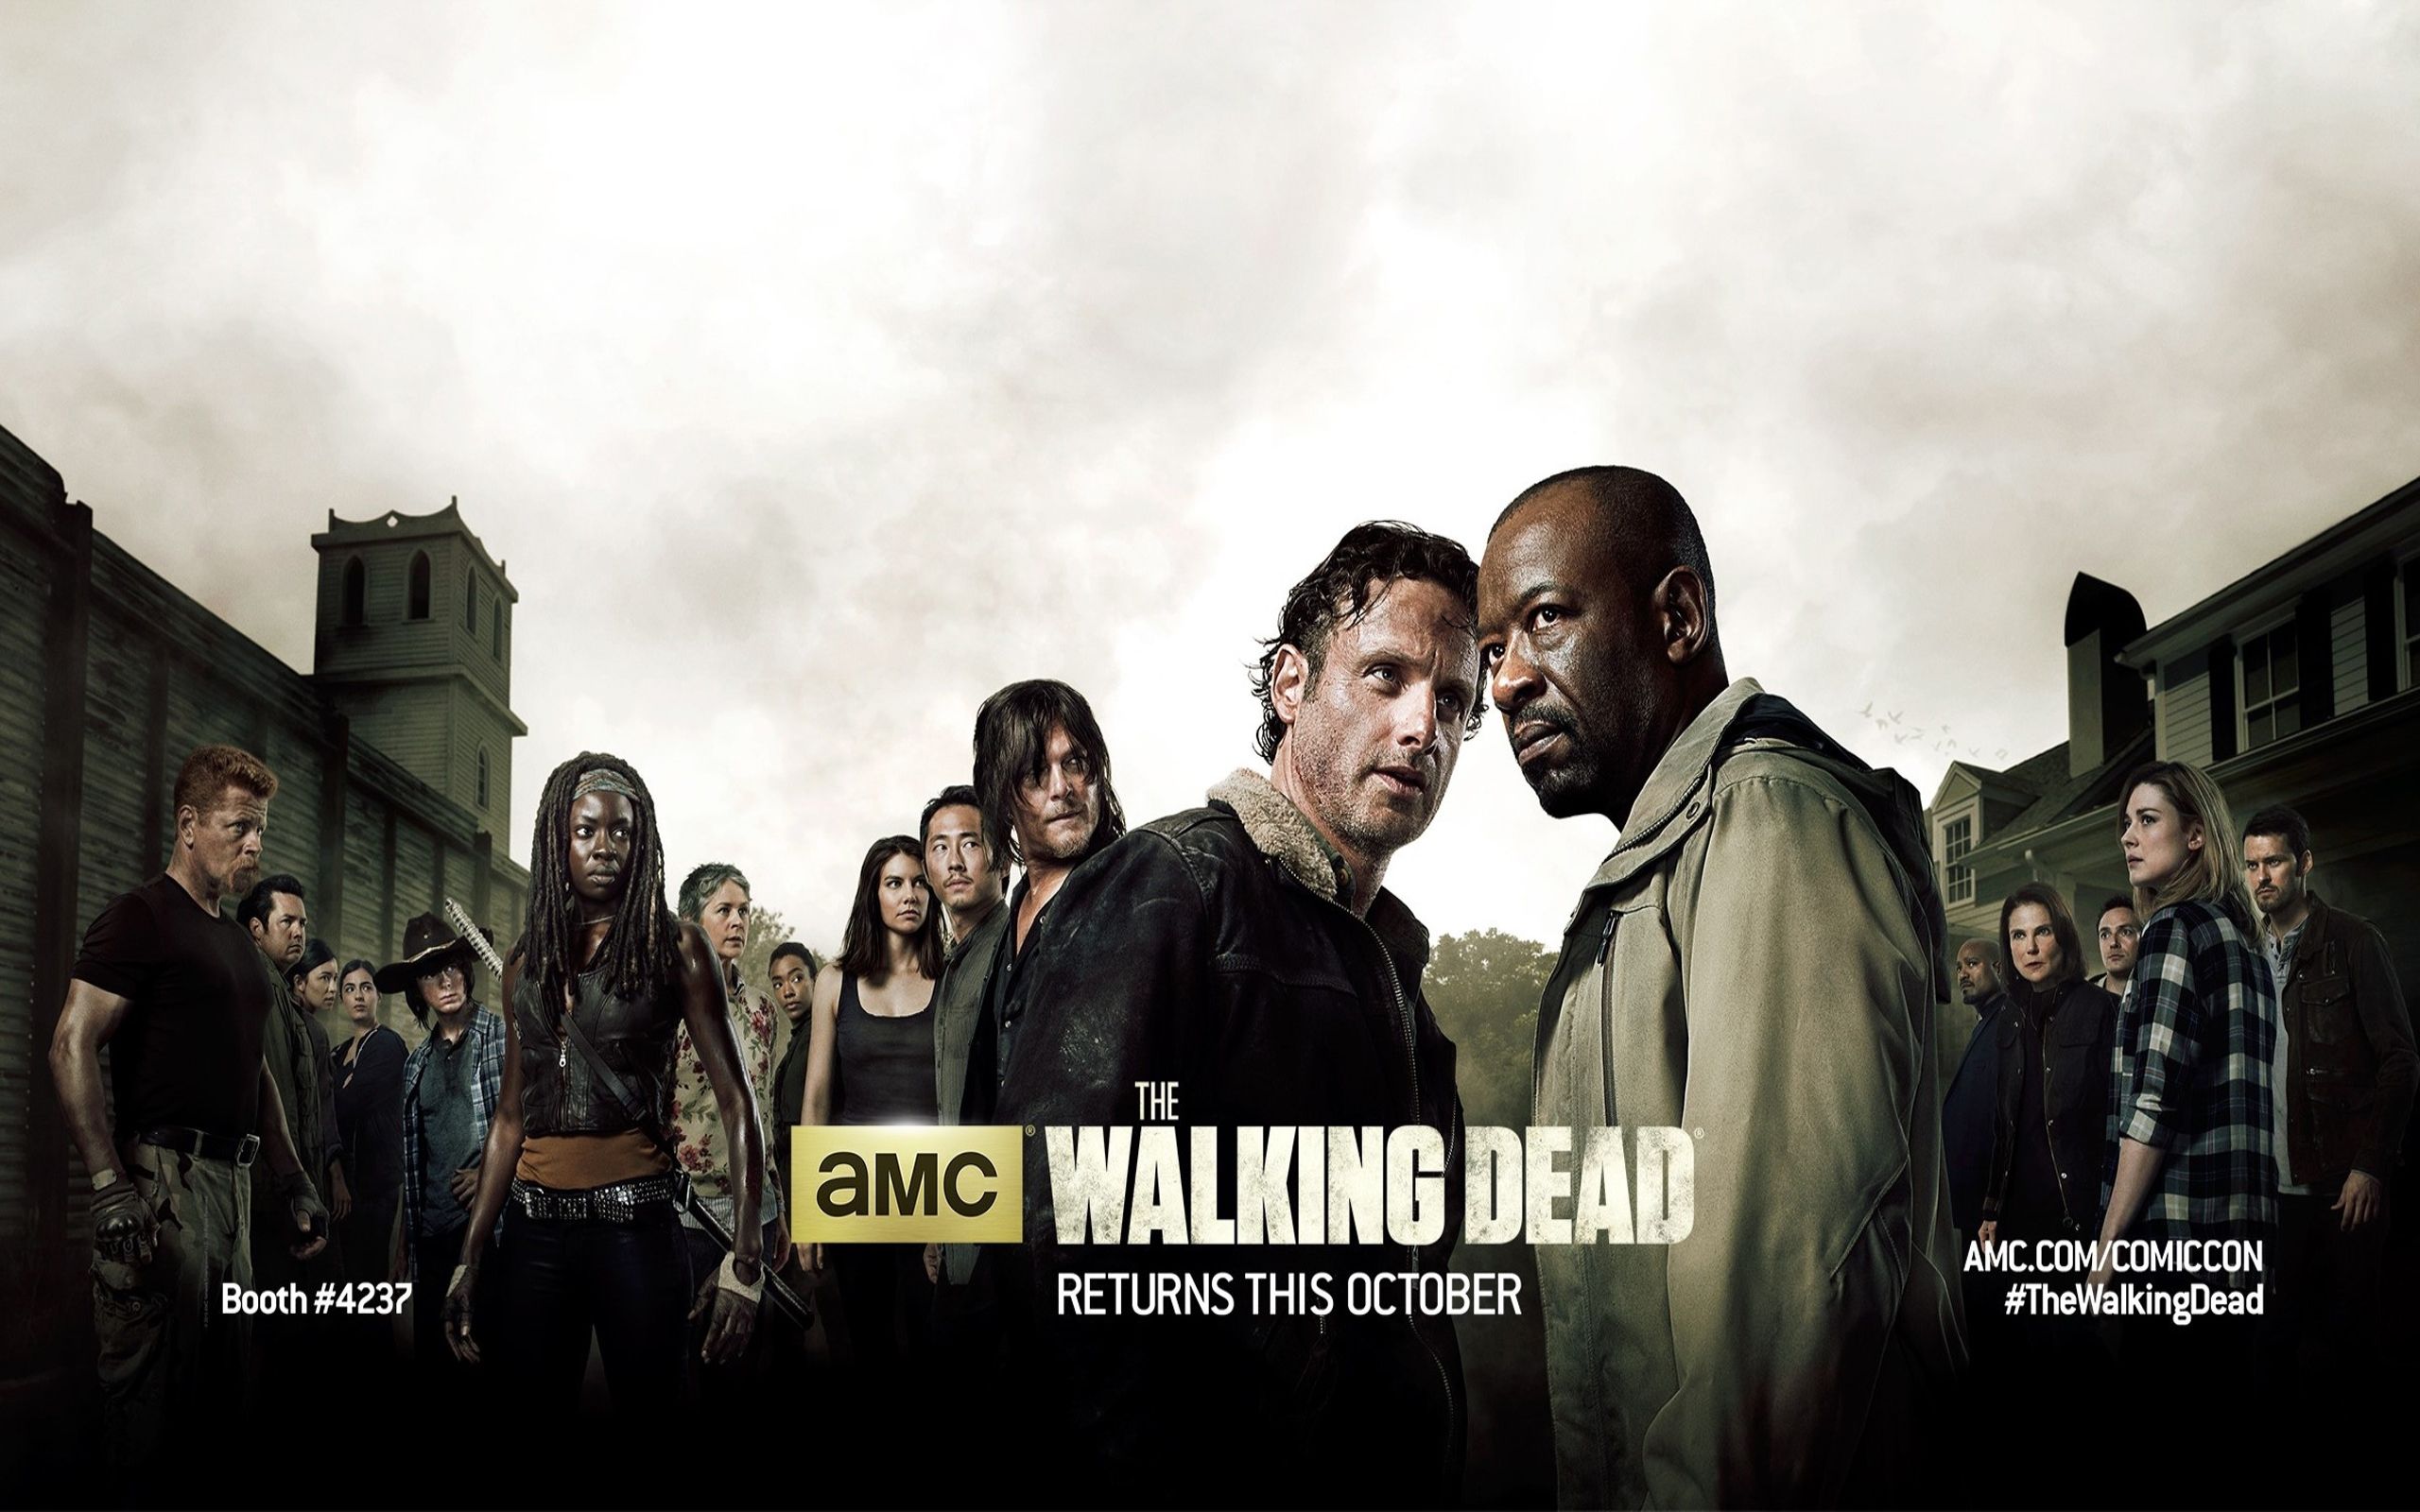 The Walking Dead Season 6 Wallpaper | HDwallpaperUP